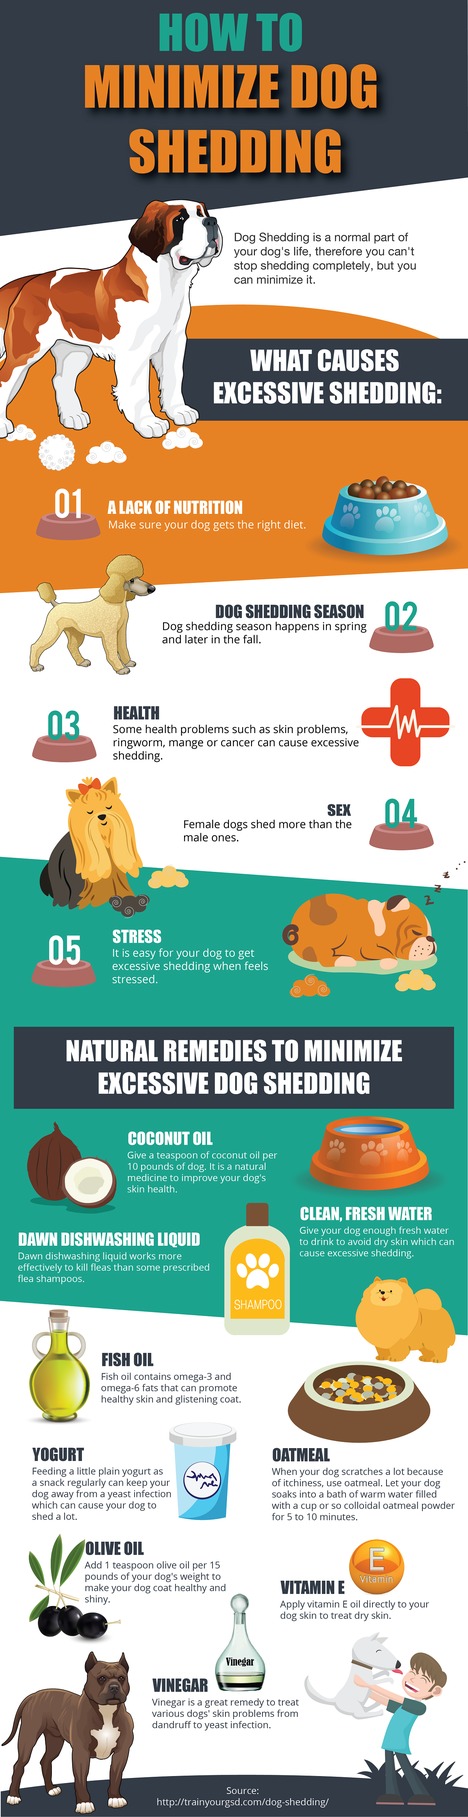 How to Minimize Dog Shedding 